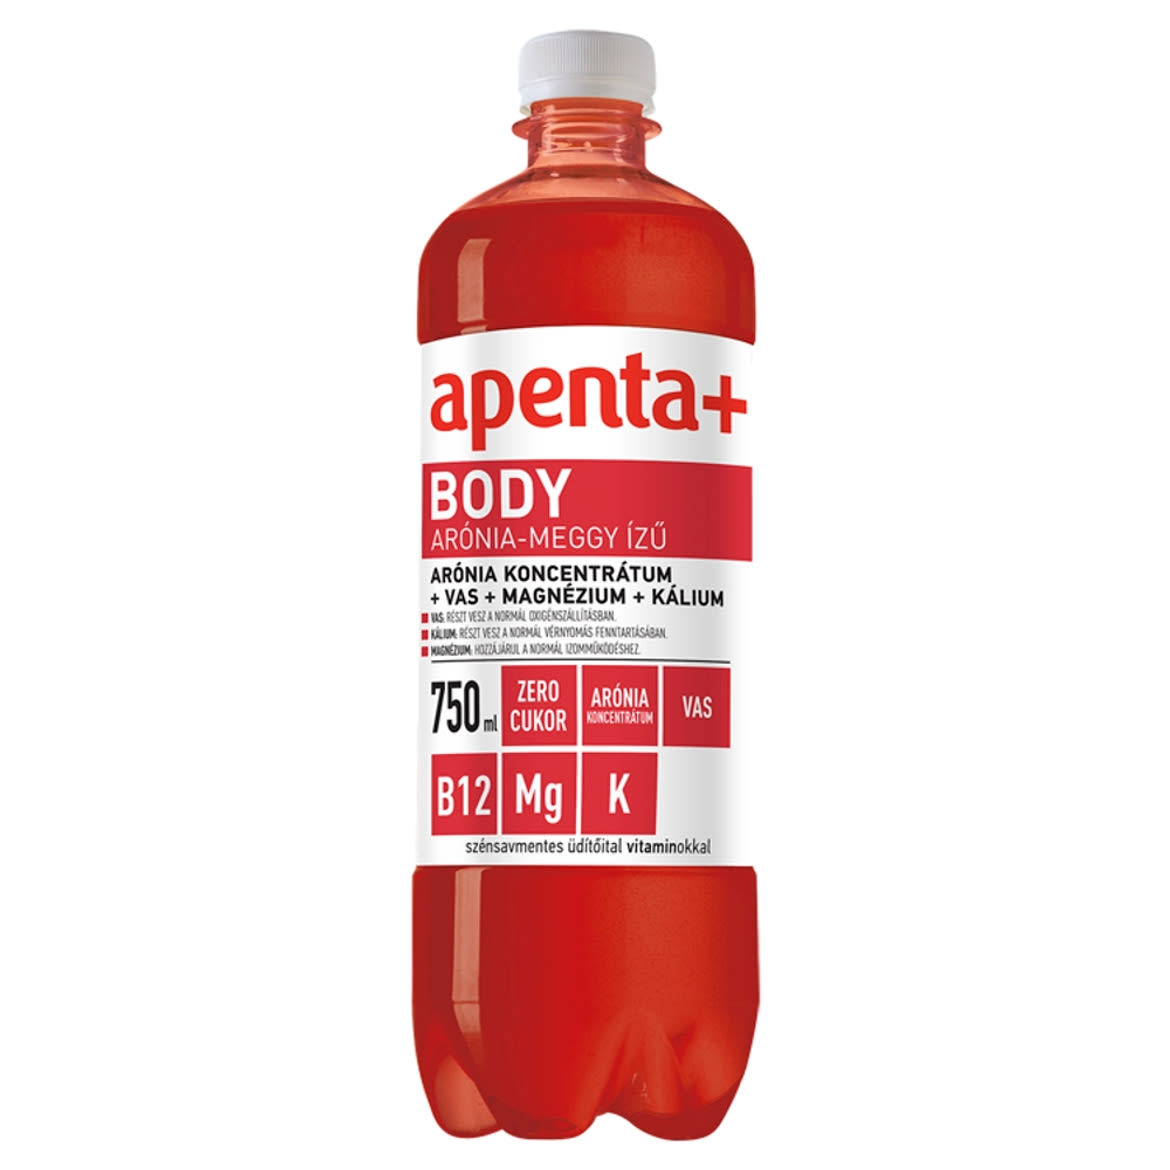 Apenta+ Body arónia-meggy ízű szénsavmentes üdítőital édesítőszerekkel, vitaminokkal